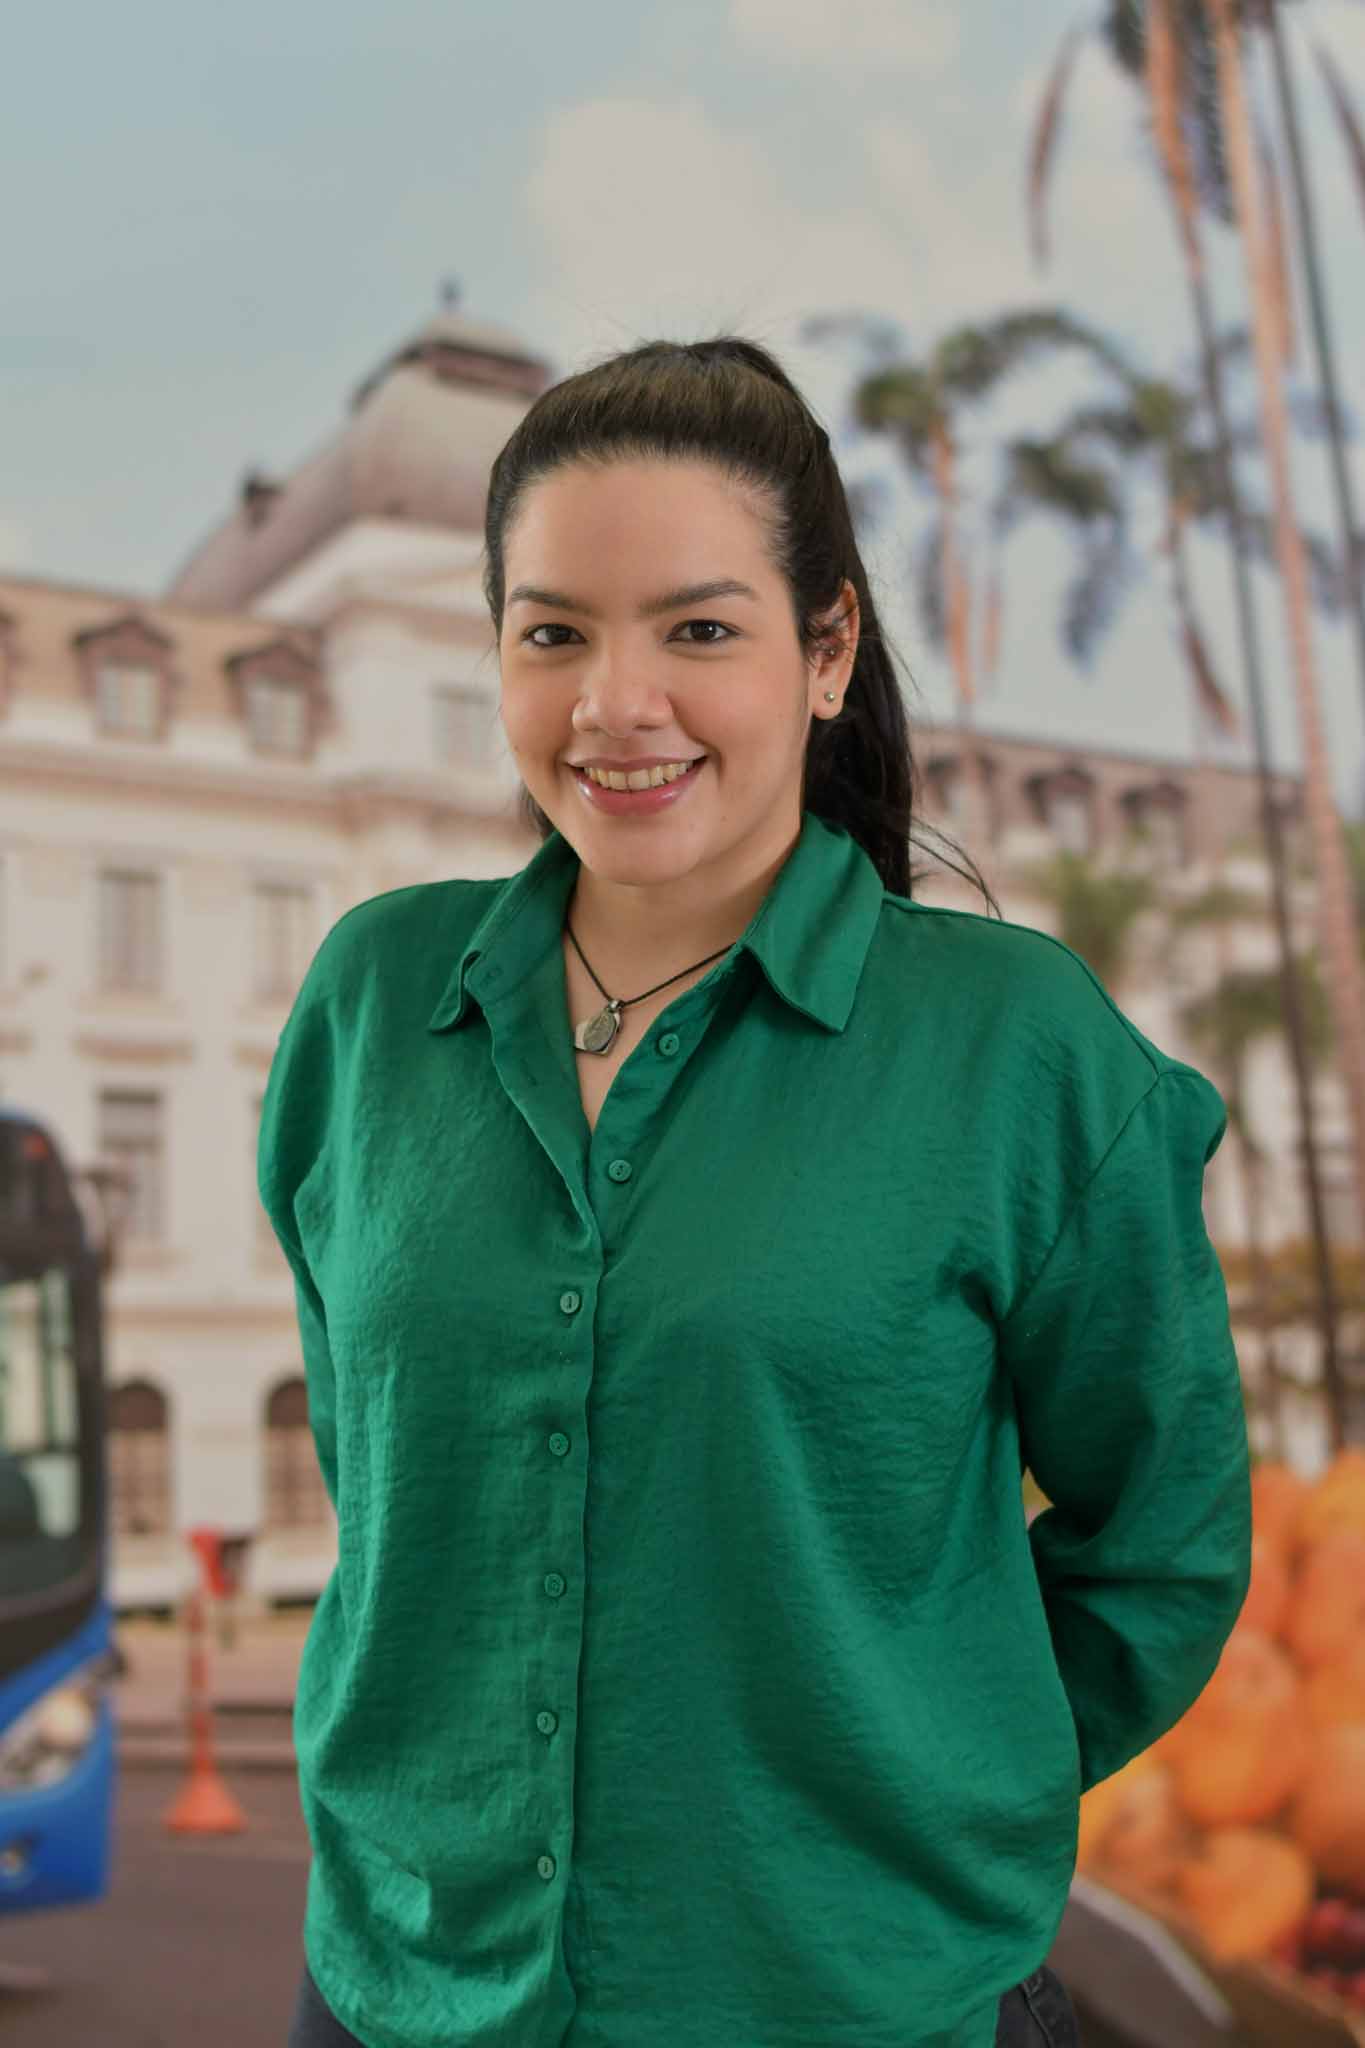 Foto de María José Bermúdez Diaz, Profesional universitario de dirección de planeación. Se encuentra de frente y sonriendo.